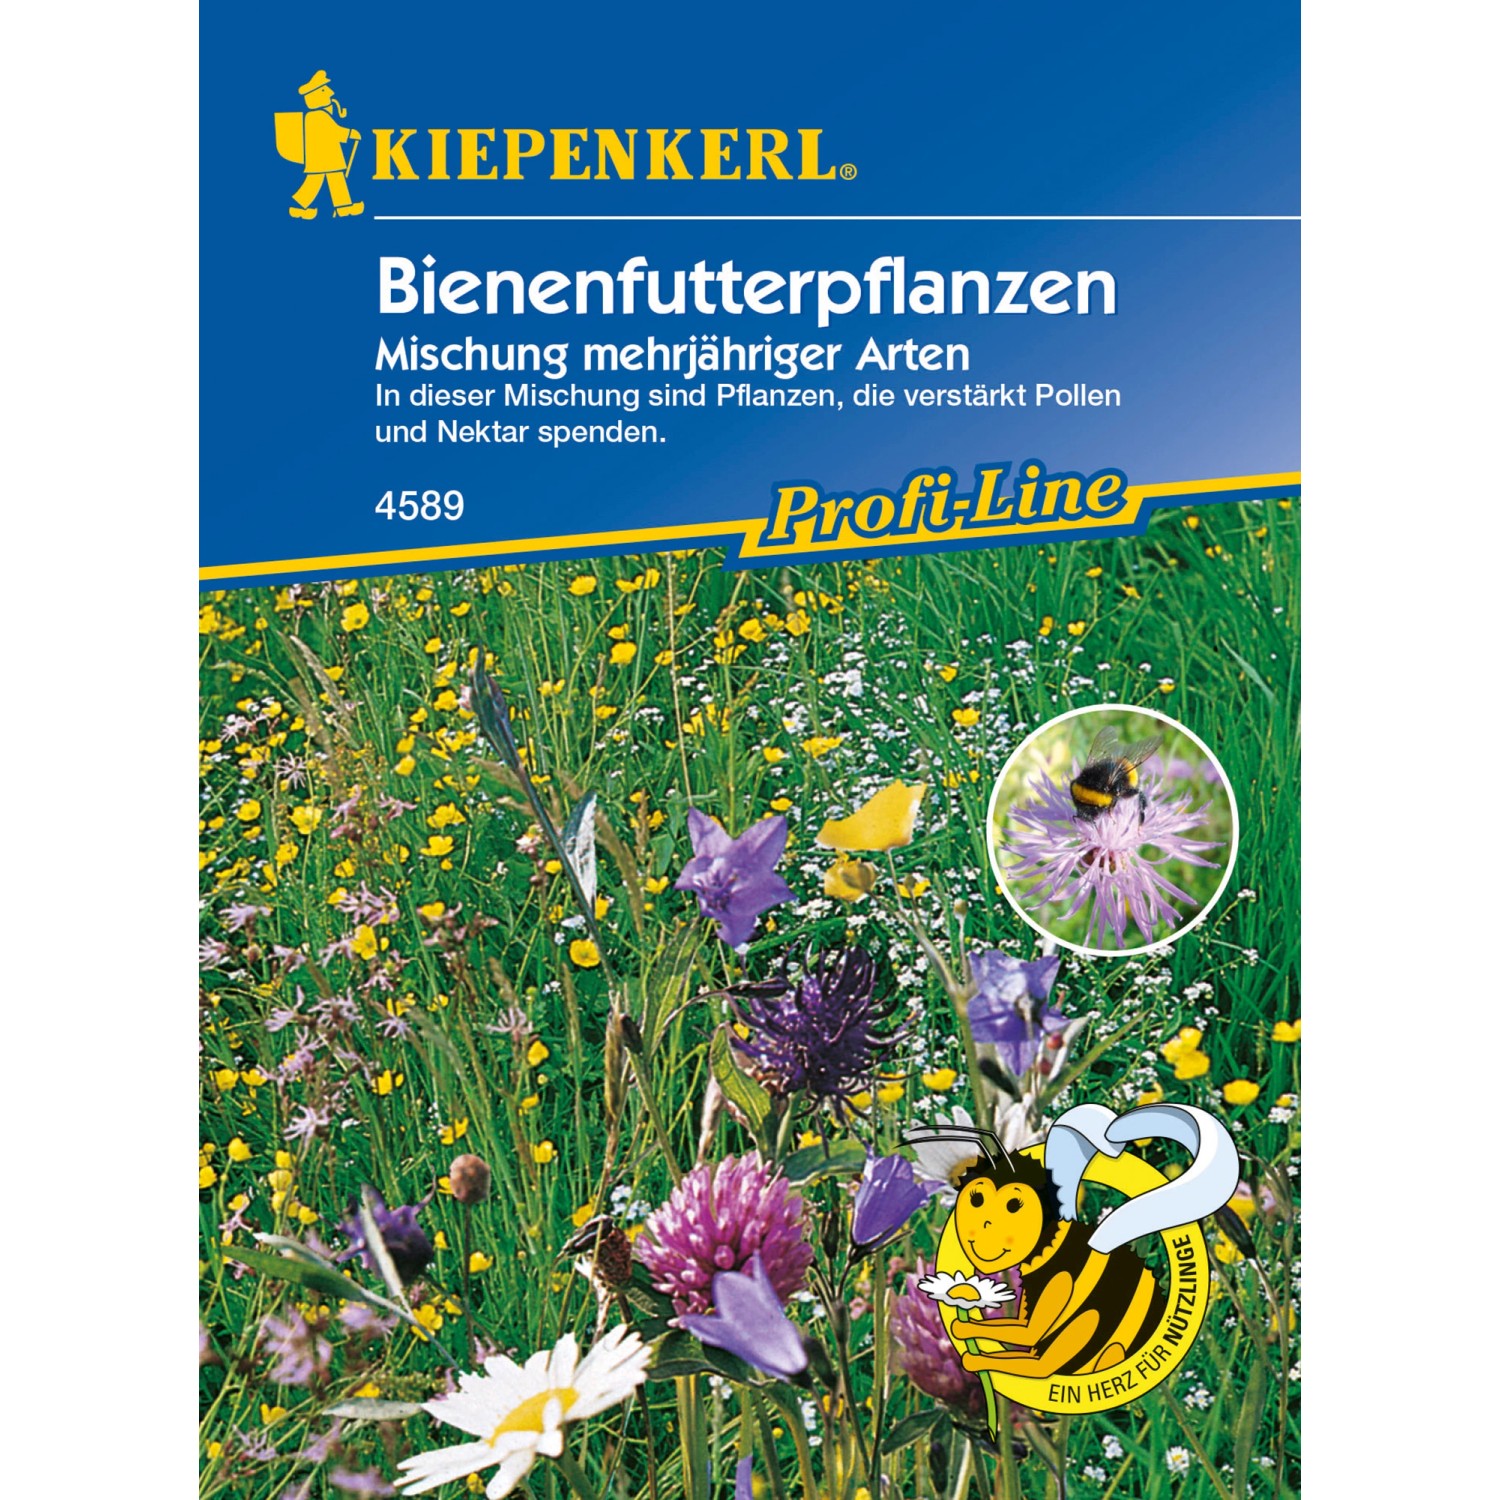 Kiepenkerl Profi-Line Bienenfutterpflanzen Mischung mehrjährig